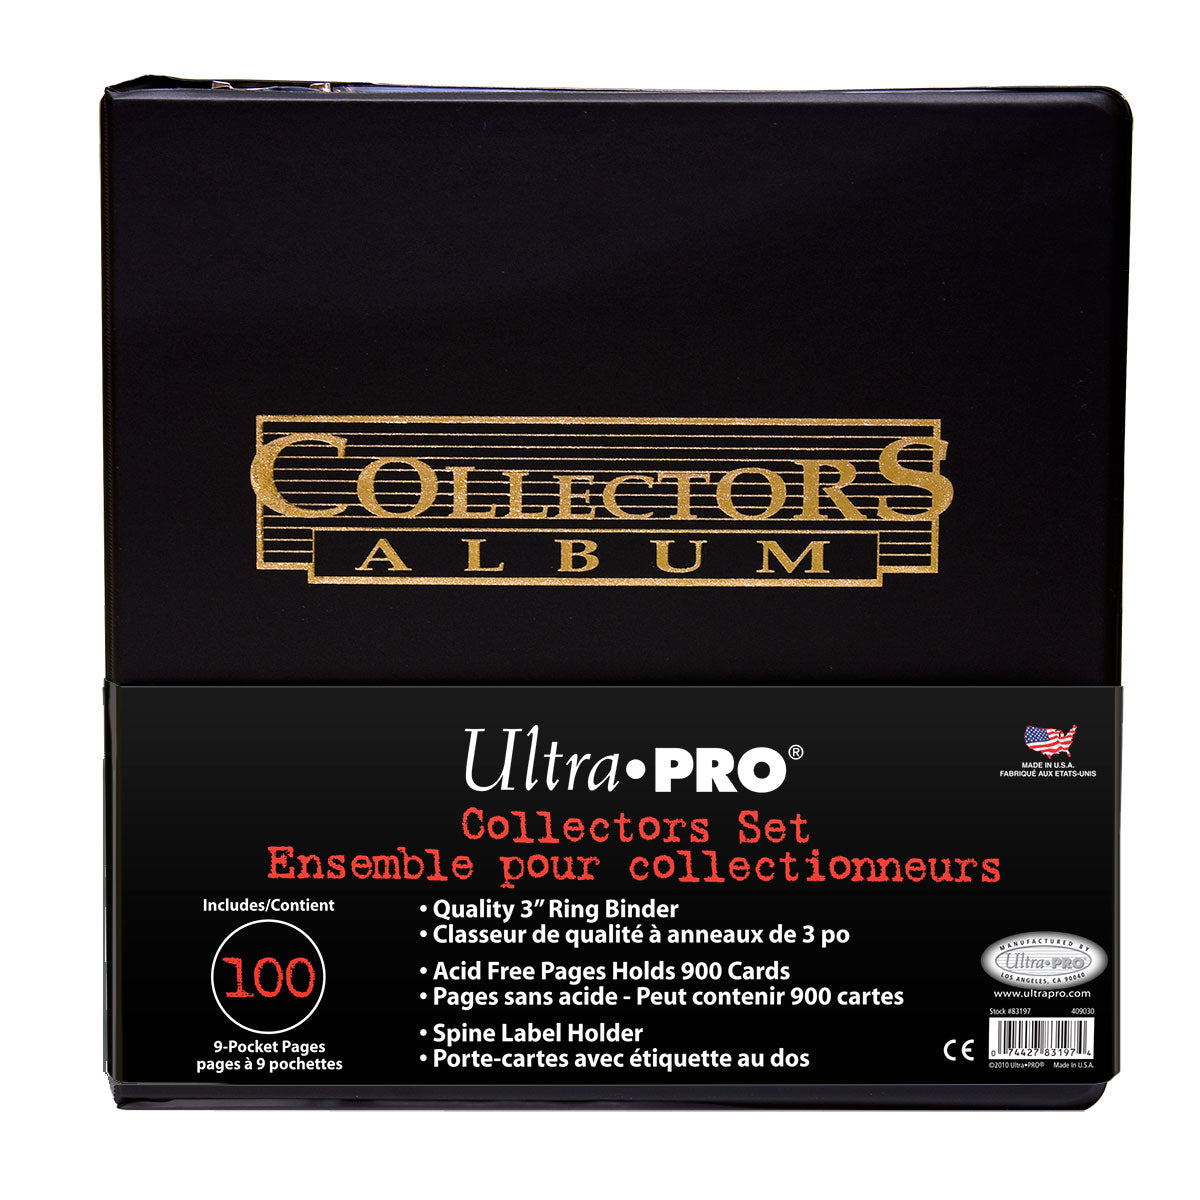 100 Pages de Classeur à 9 pochettes (Platinum Series) - Ultra Pro